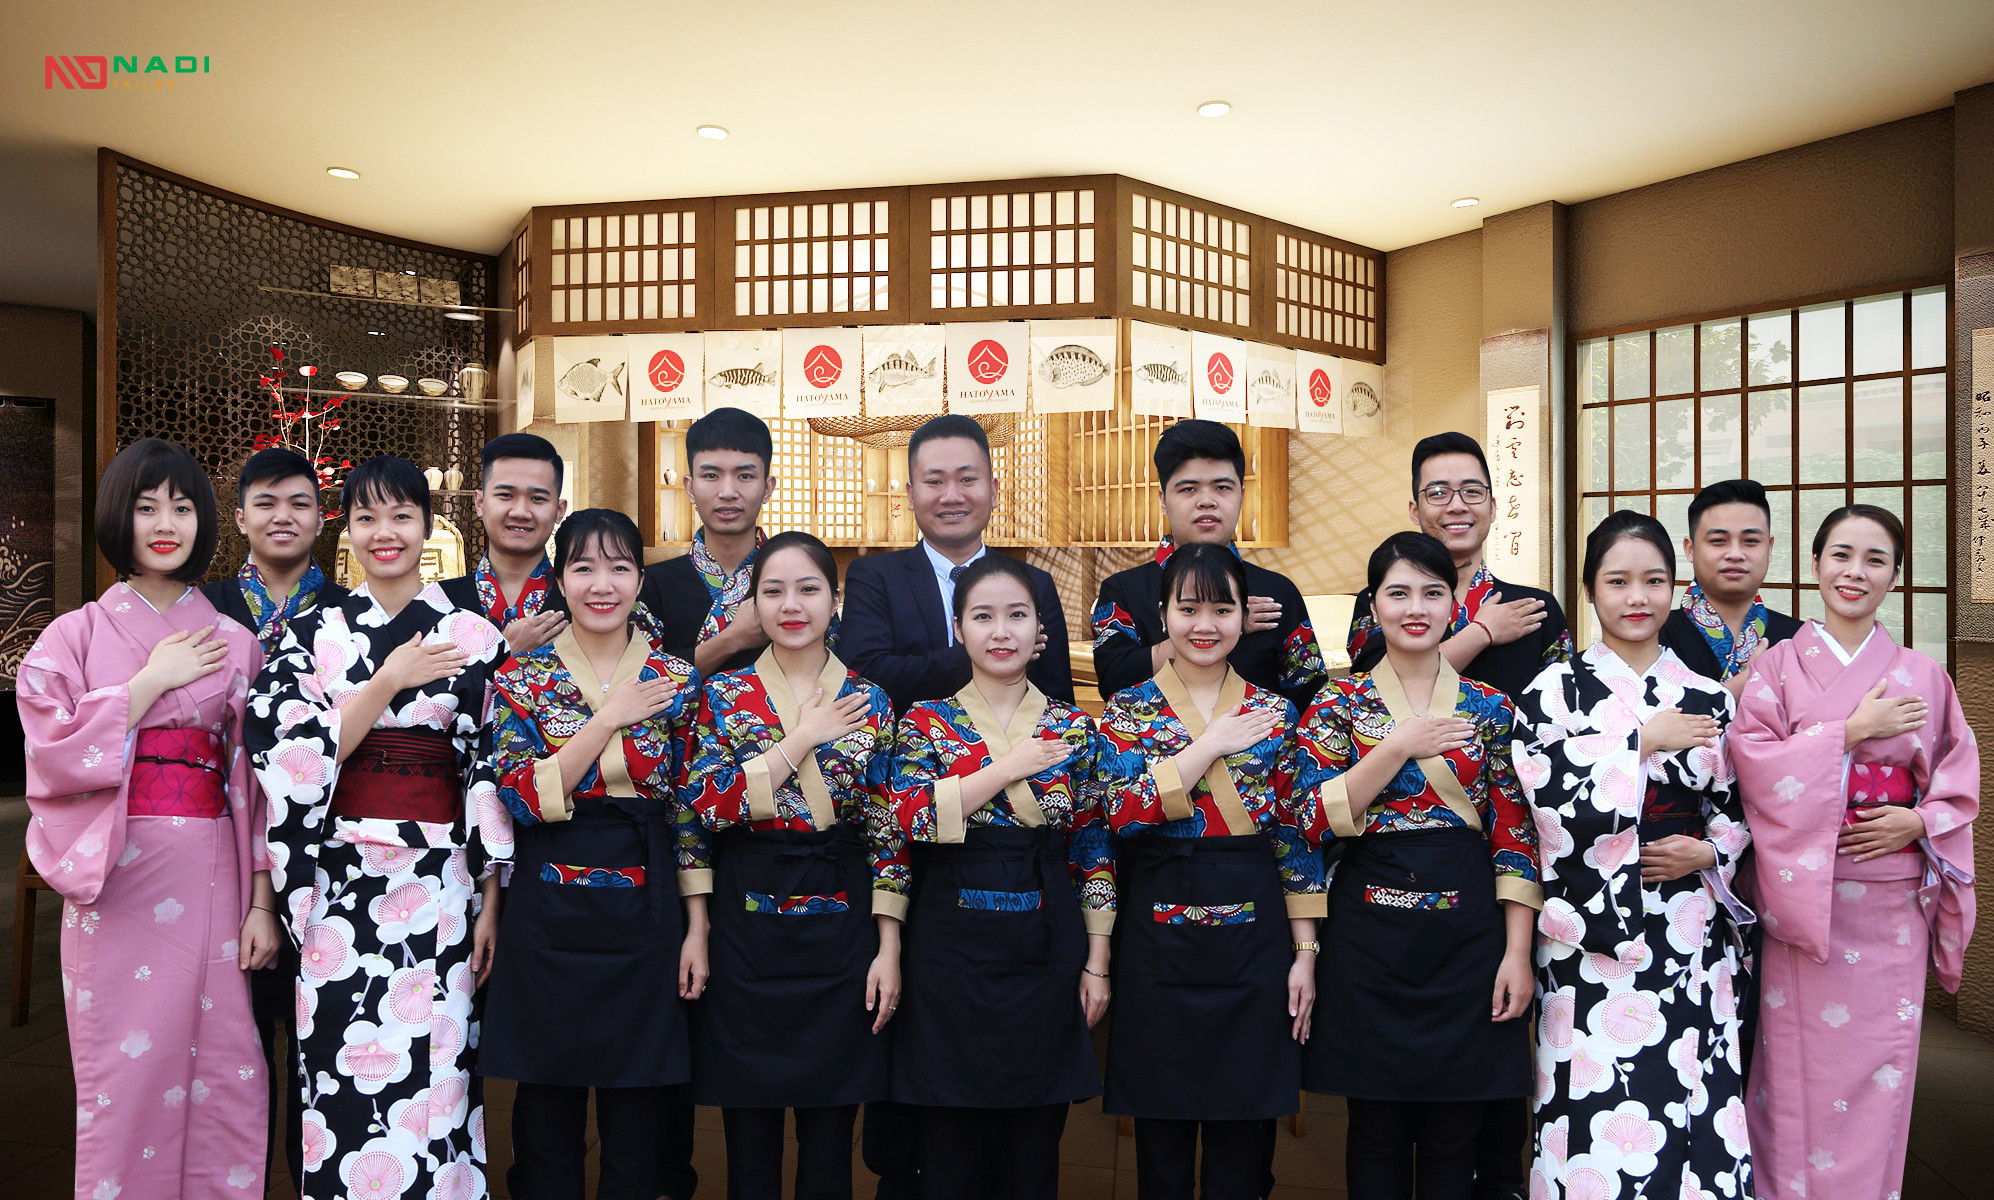 Áo đồng phục kimono cho nhà hàng thể hiện phong cách nhà hàng đẳng cấp